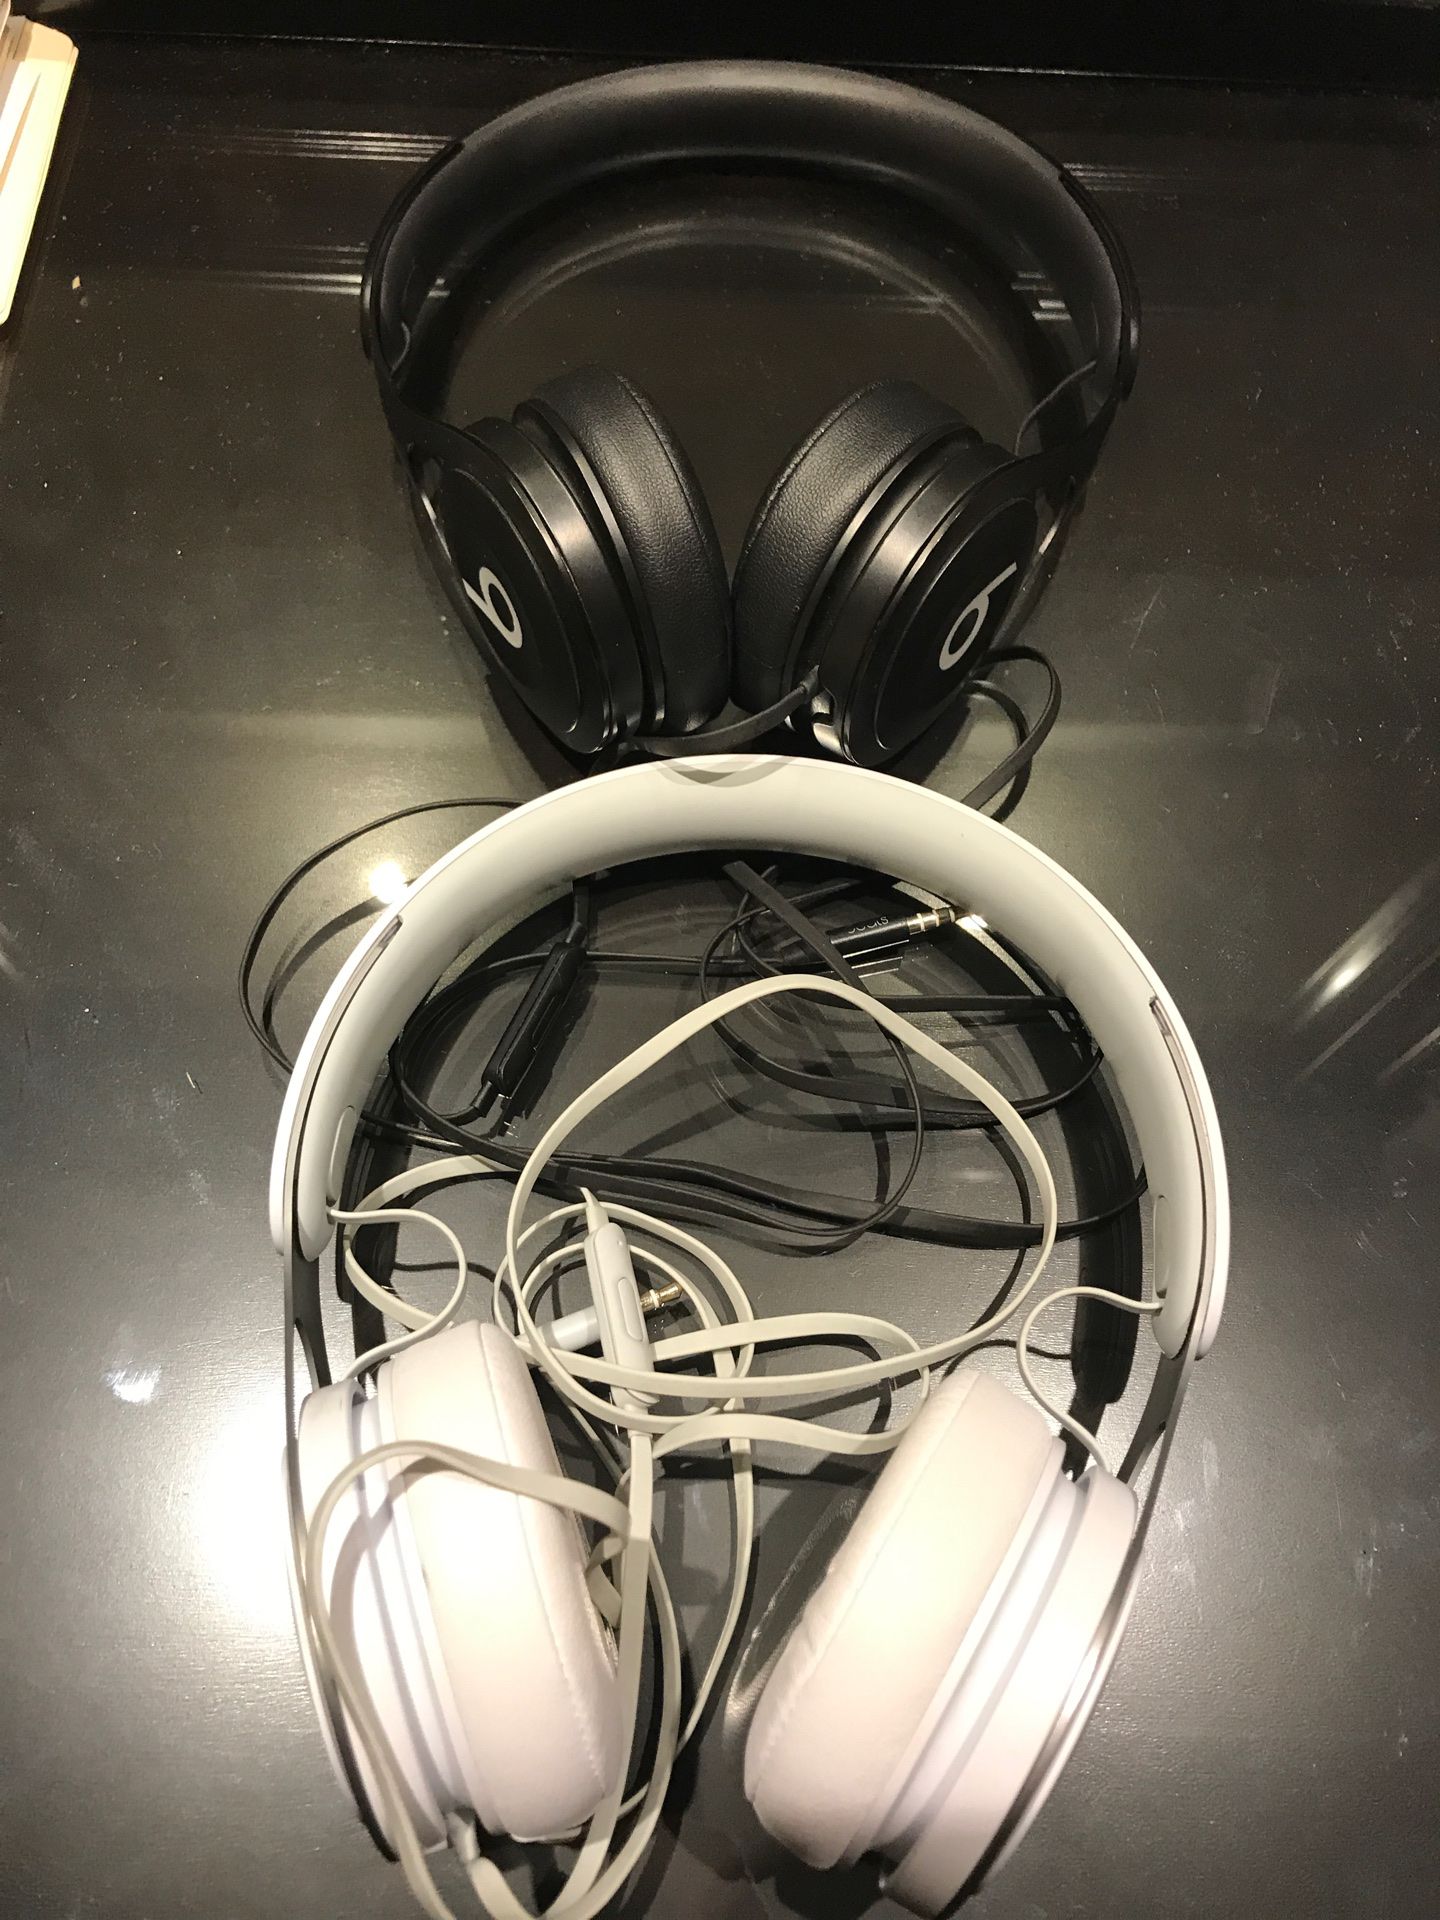 2 Beats by Dr. Dre - Beats EP Headphones - Black/White